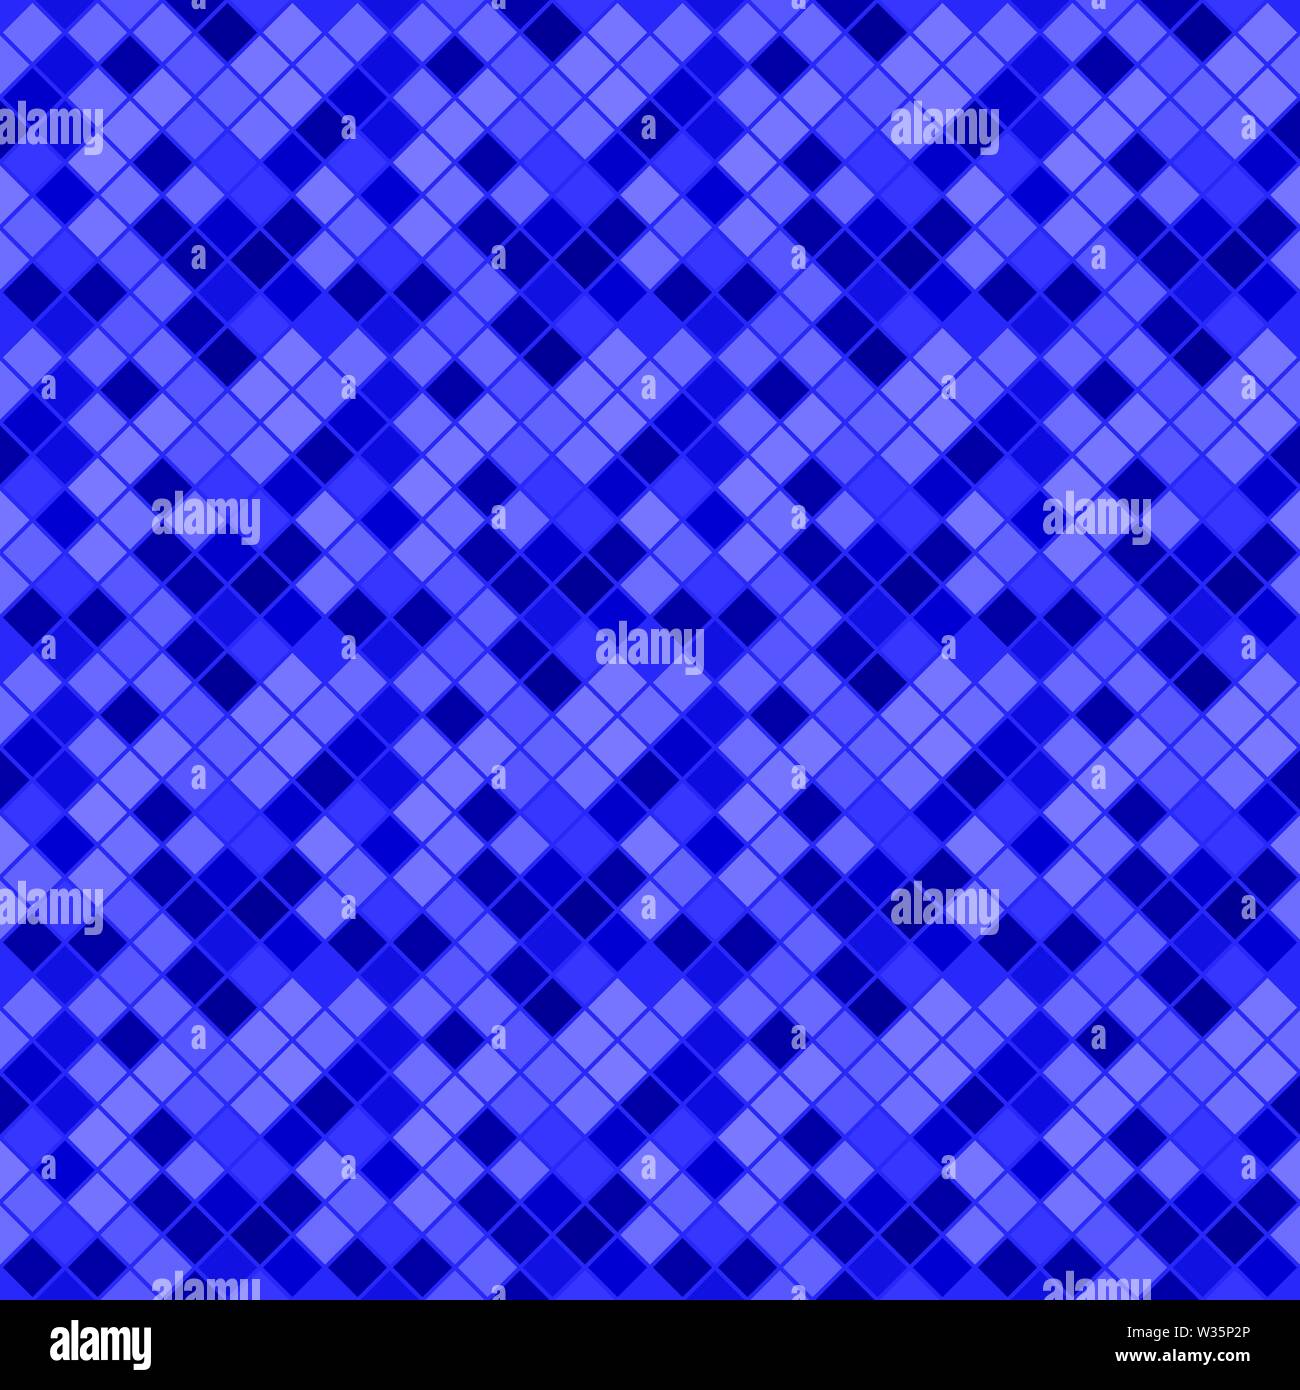 Dunkle nahtlose abstrakten geometrischen Diagonalen quadratischen Muster Hintergrund - Blauer vektor design von Plätzen Stock Vektor